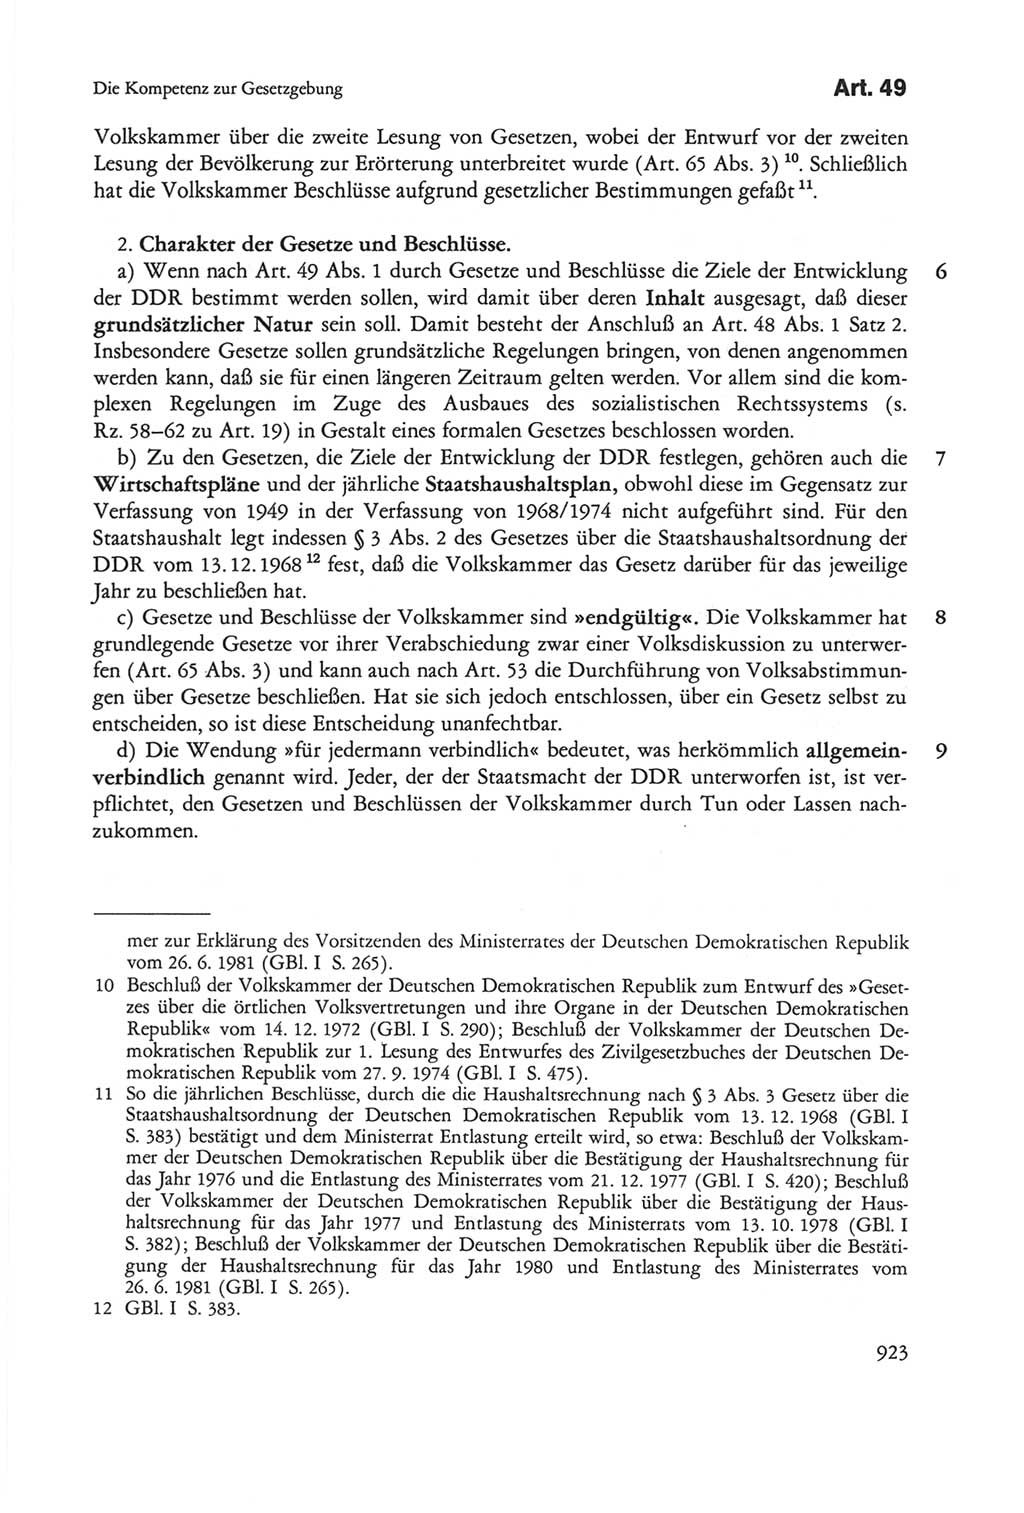 Die sozialistische Verfassung der Deutschen Demokratischen Republik (DDR), Kommentar 1982, Seite 923 (Soz. Verf. DDR Komm. 1982, S. 923)